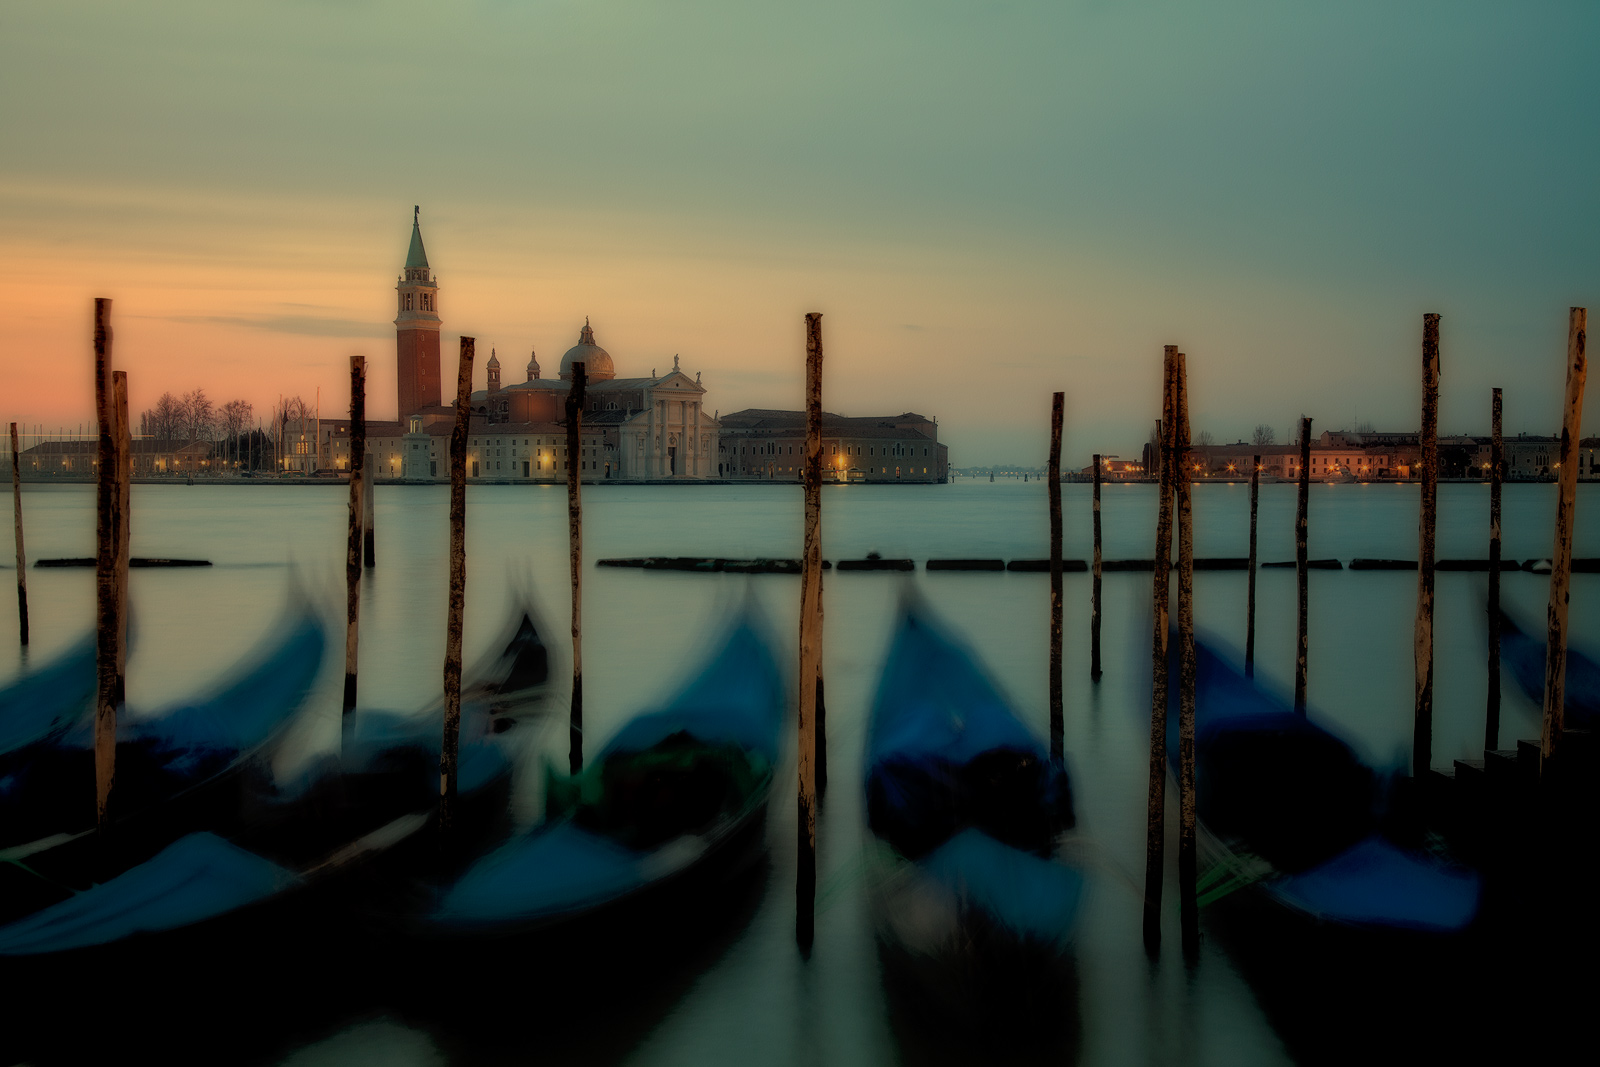 Gondolas docked at San Marco Square in Venice.